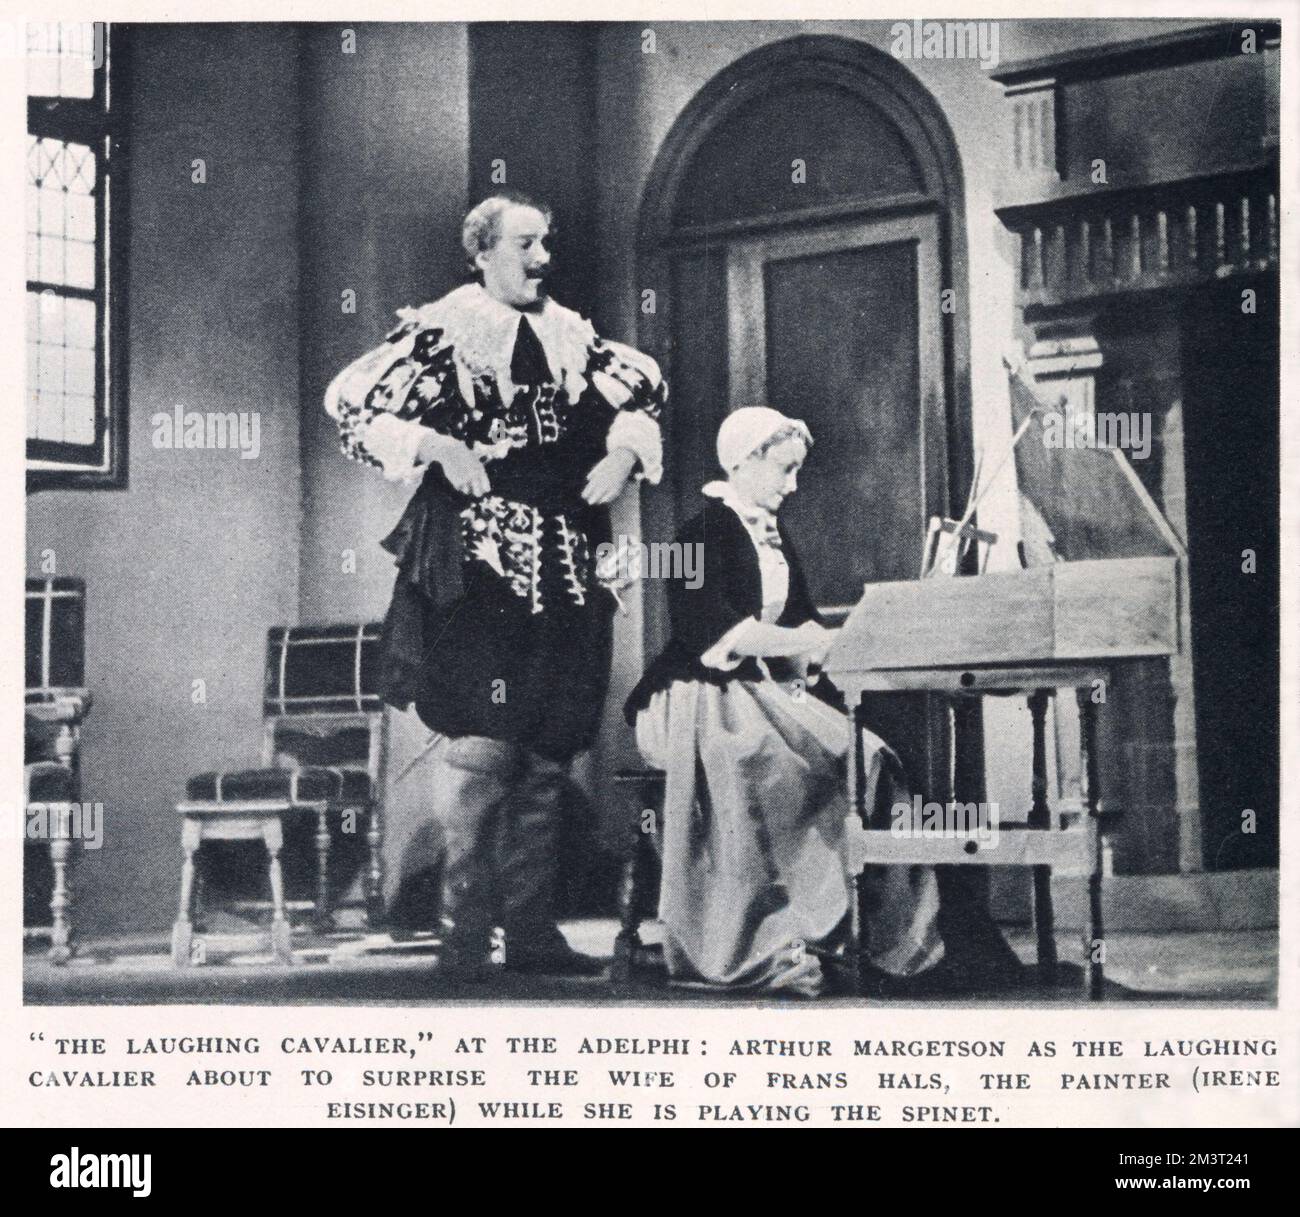 Der lachende Kavalier im Adelphi Theatre, London: Arthur Margetson in der Rolle des Kavaliers wird die Frau von Frans Hals, der Malerin (gespielt von Irene Eisinger), überraschen, während sie Spinet spielt. Stockfoto